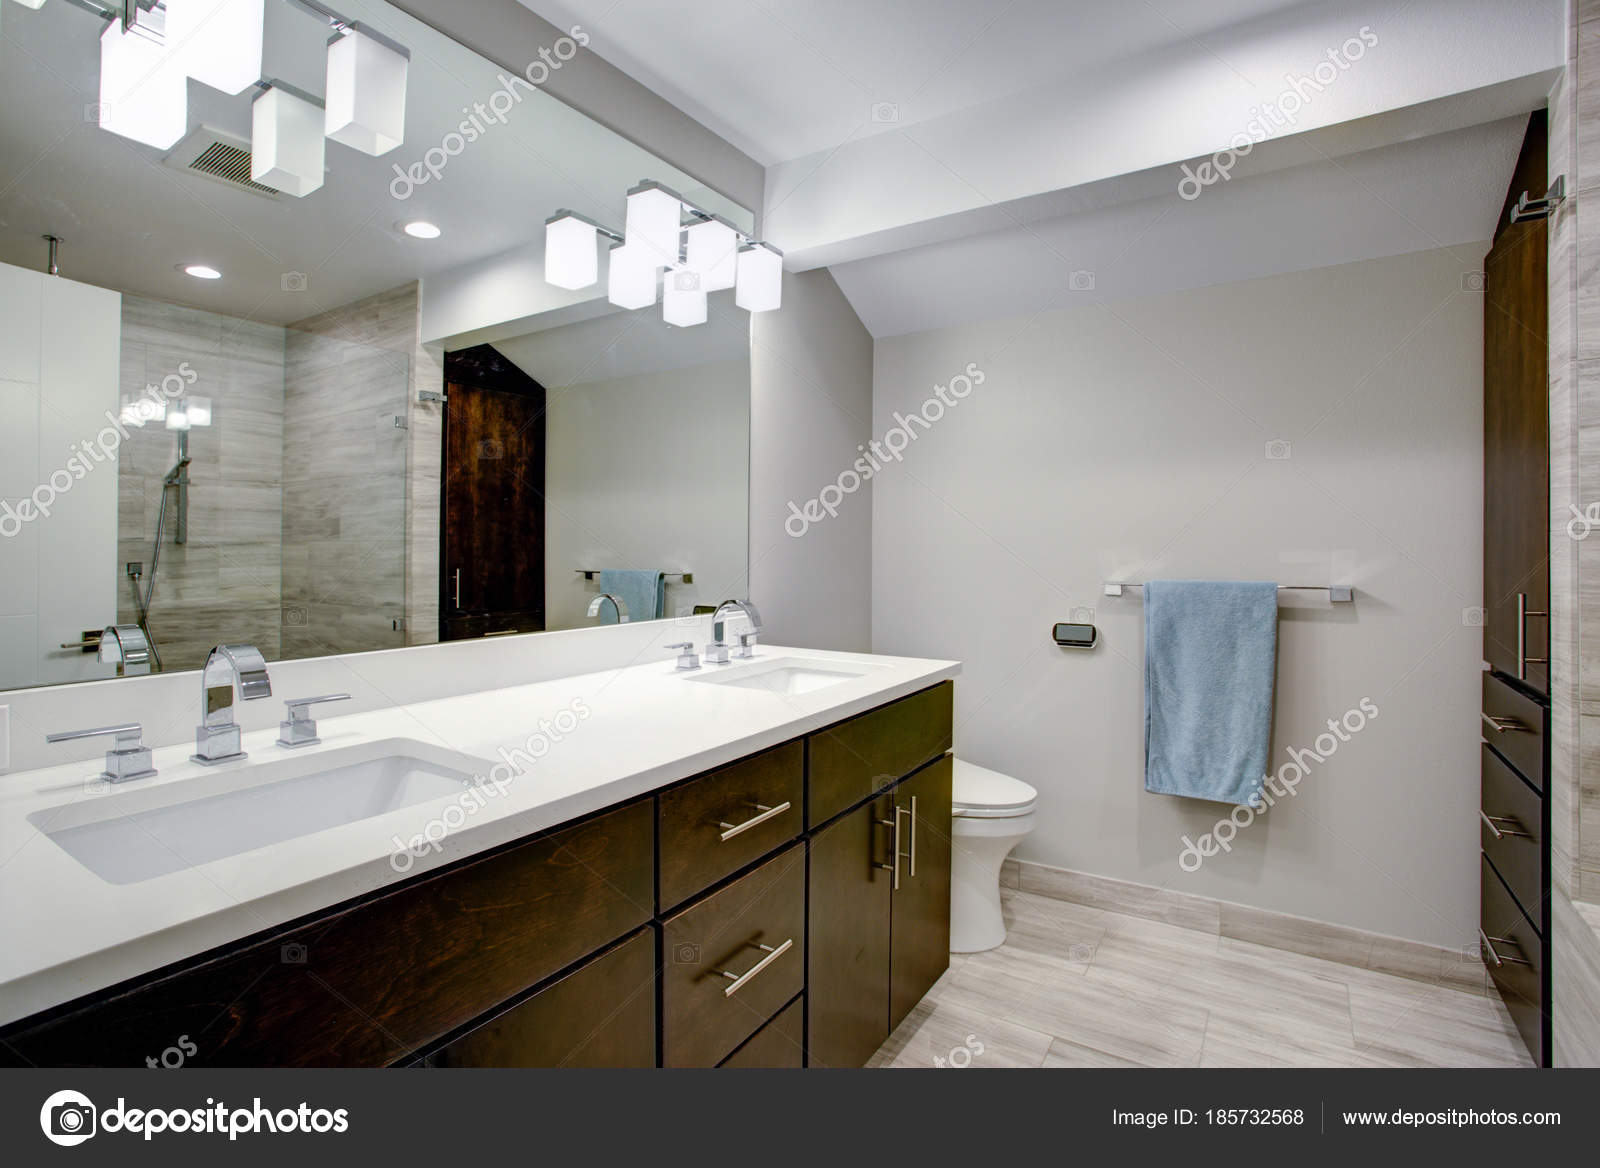 Elegante baño con tocador doble espresso — Foto de stock © alabn #185732568